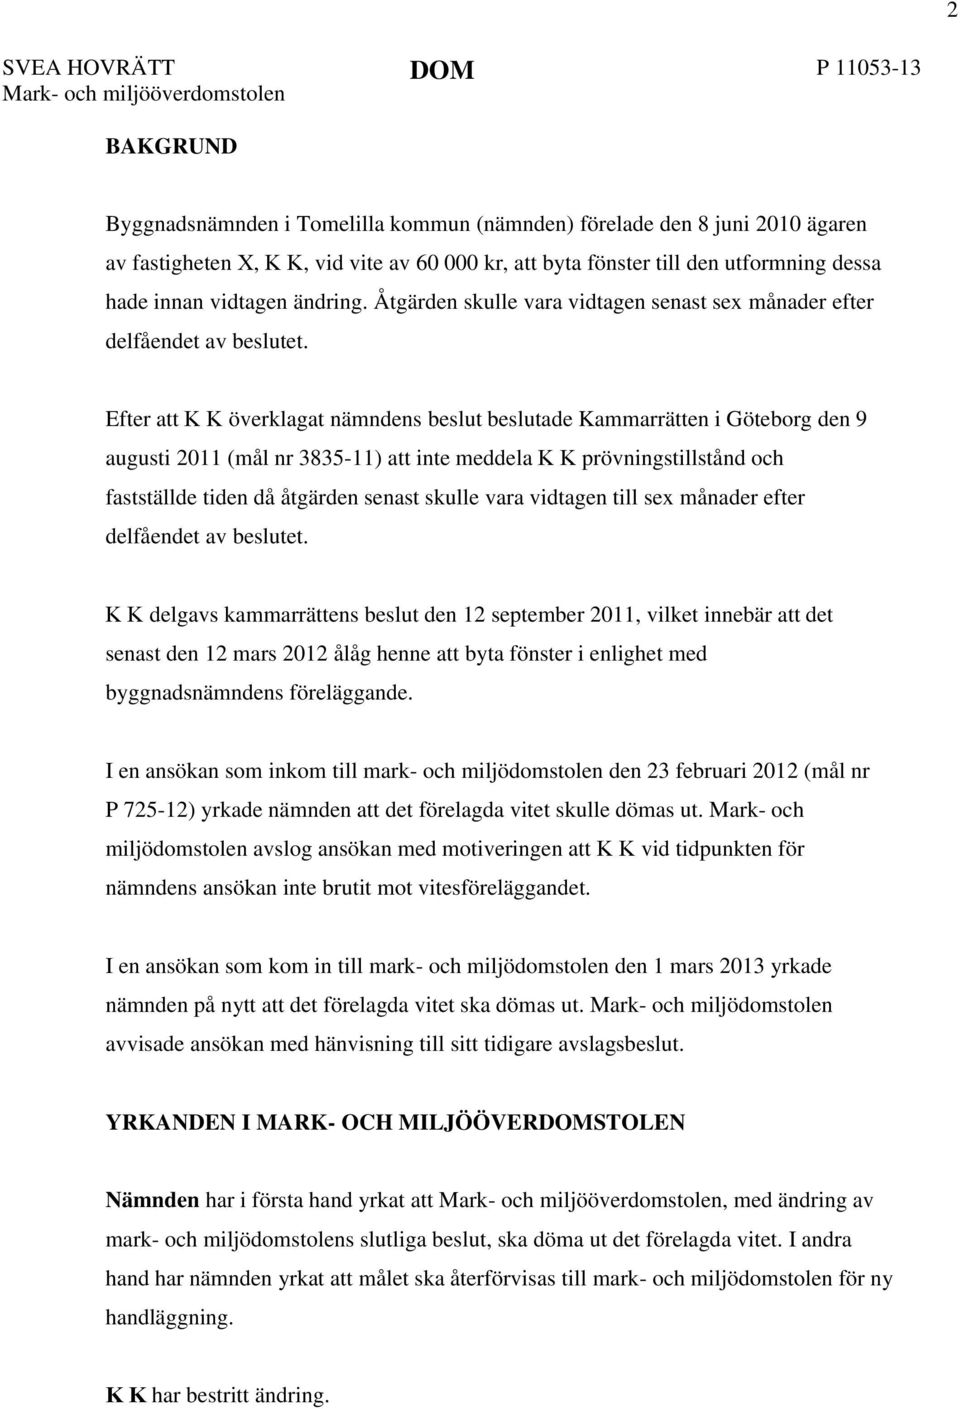 Efter att K K överklagat nämndens beslut beslutade Kammarrätten i Göteborg den 9 augusti 2011 (mål nr 3835-11) att inte meddela K K prövningstillstånd och fastställde tiden då åtgärden senast skulle